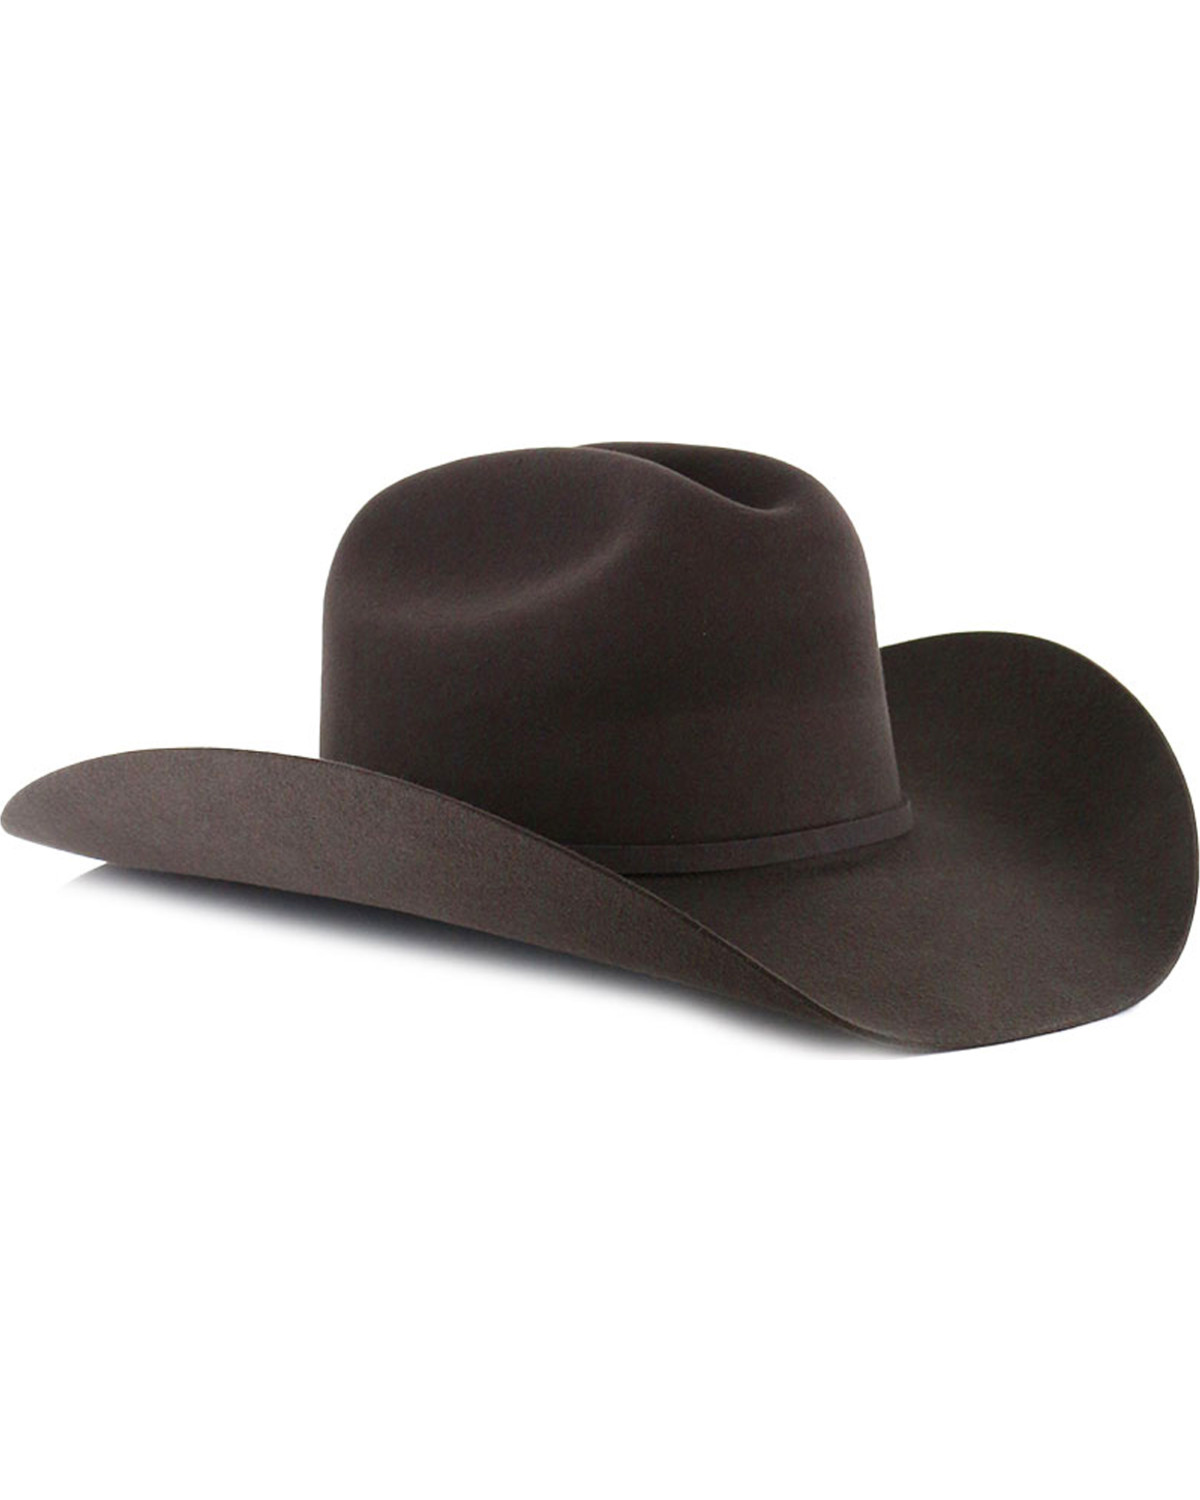 Grey Cowboy Hats